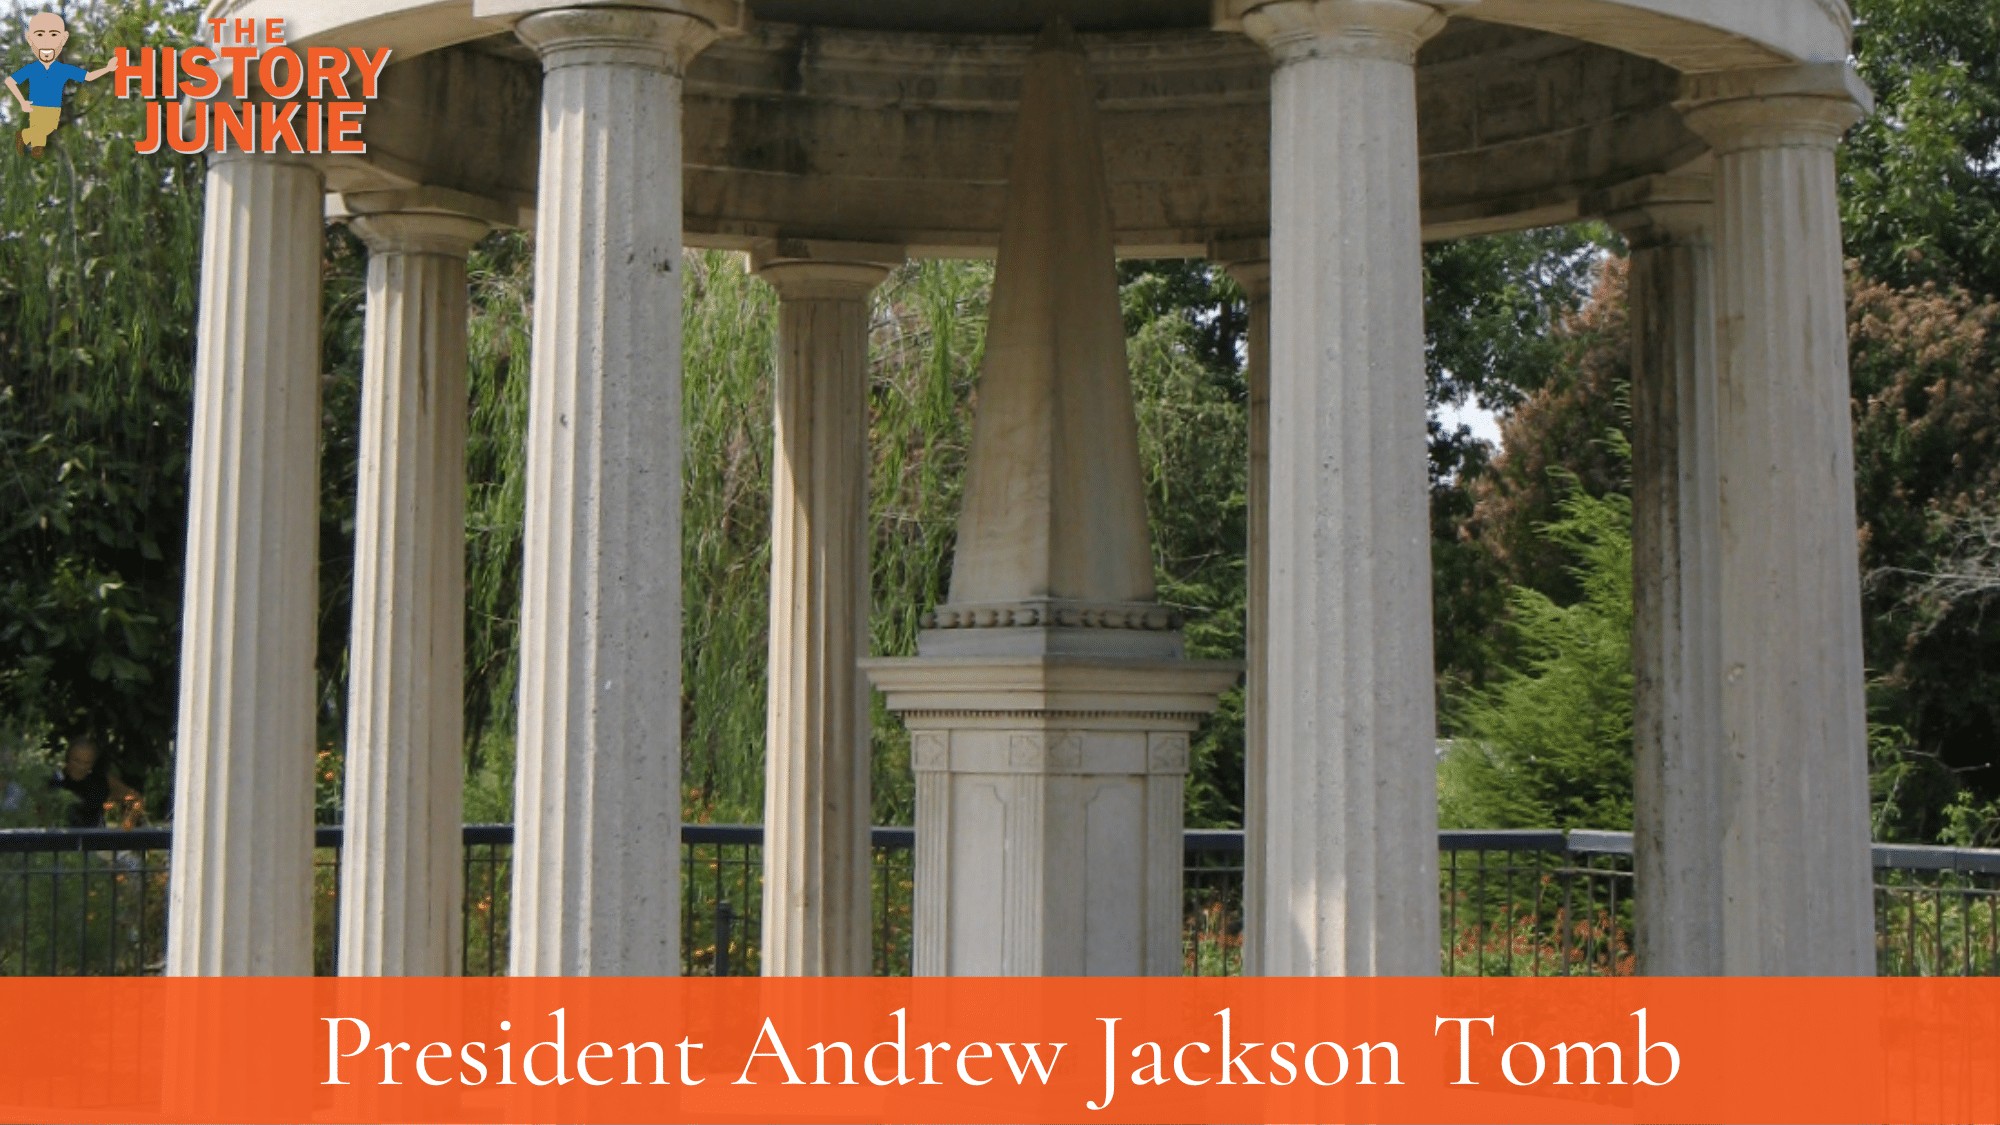 Andrew Jackson Tomb